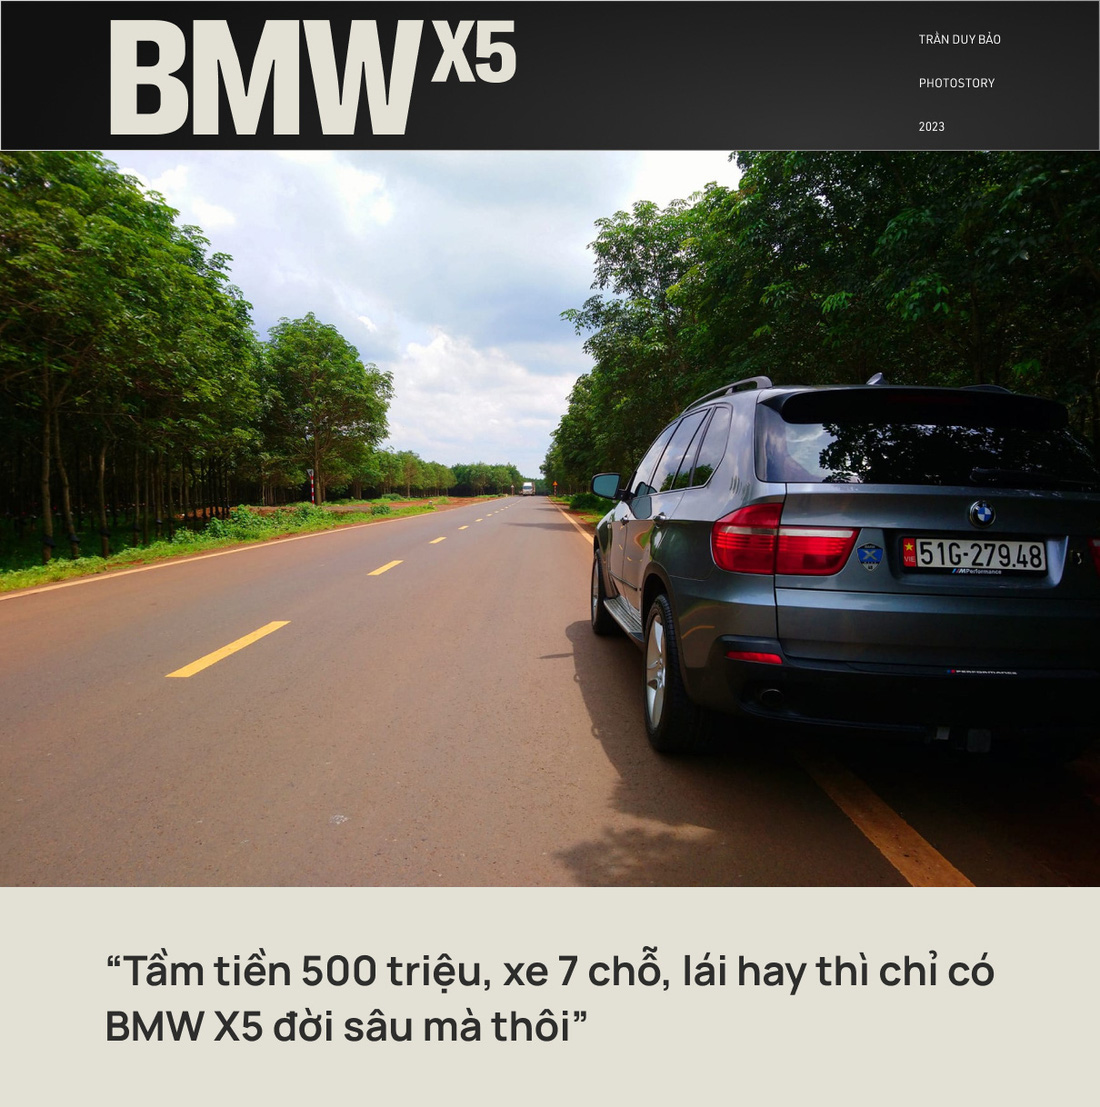 Mang BMW X5 18 năm tuổi xuyên Việt 5 lần, kiến trúc sư nói tâm trạng 'nhảy hố vôi'- Ảnh 3.